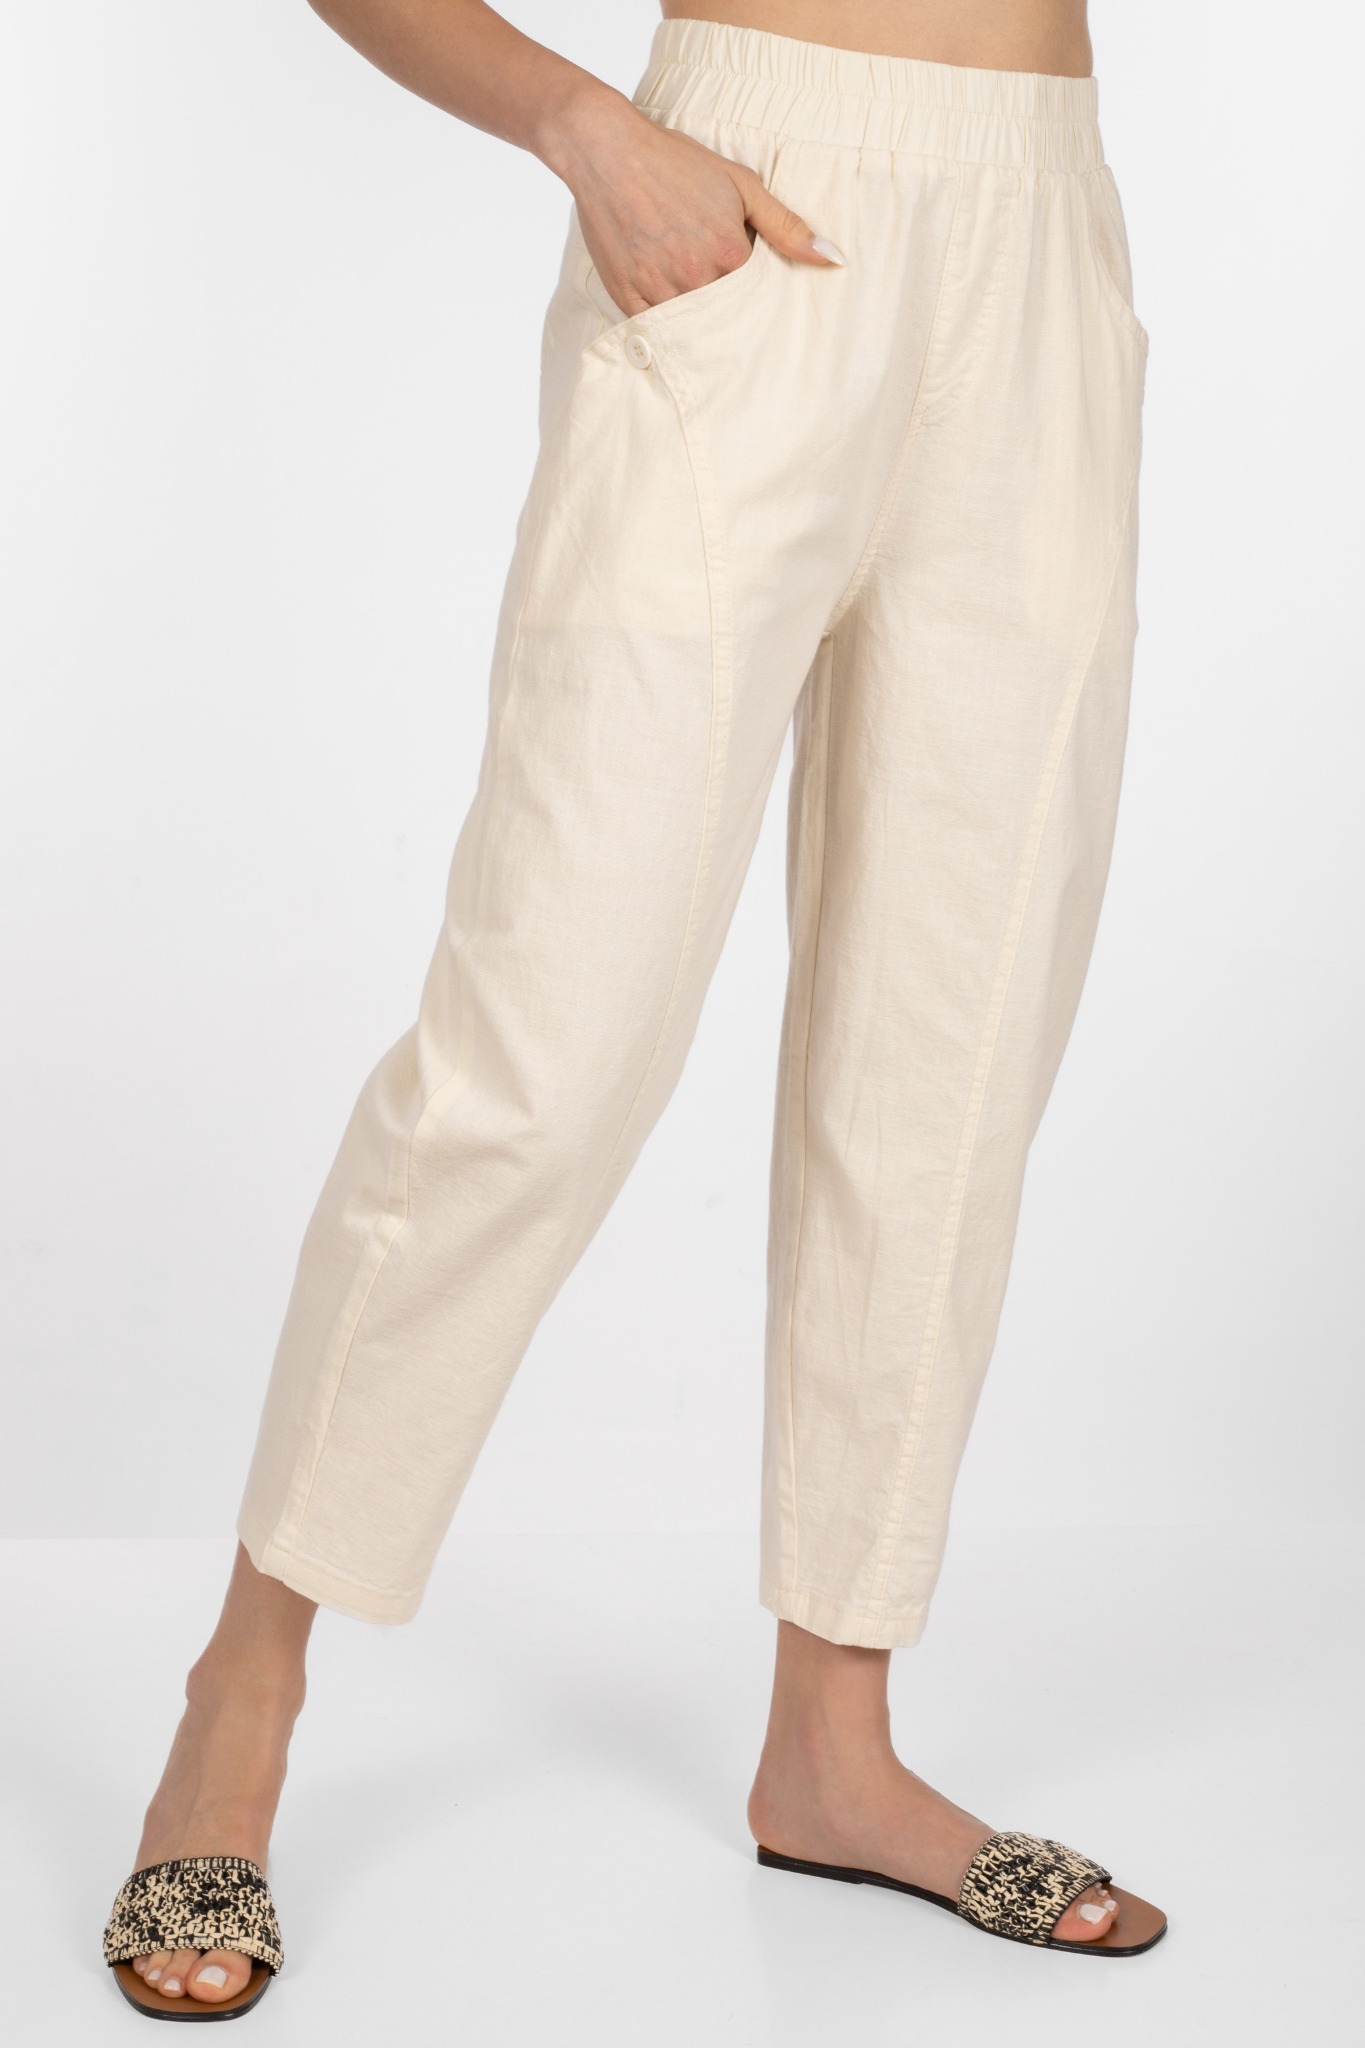 Дамски панталон от памук в екрю с ластик в талията и копче на страничните джобове